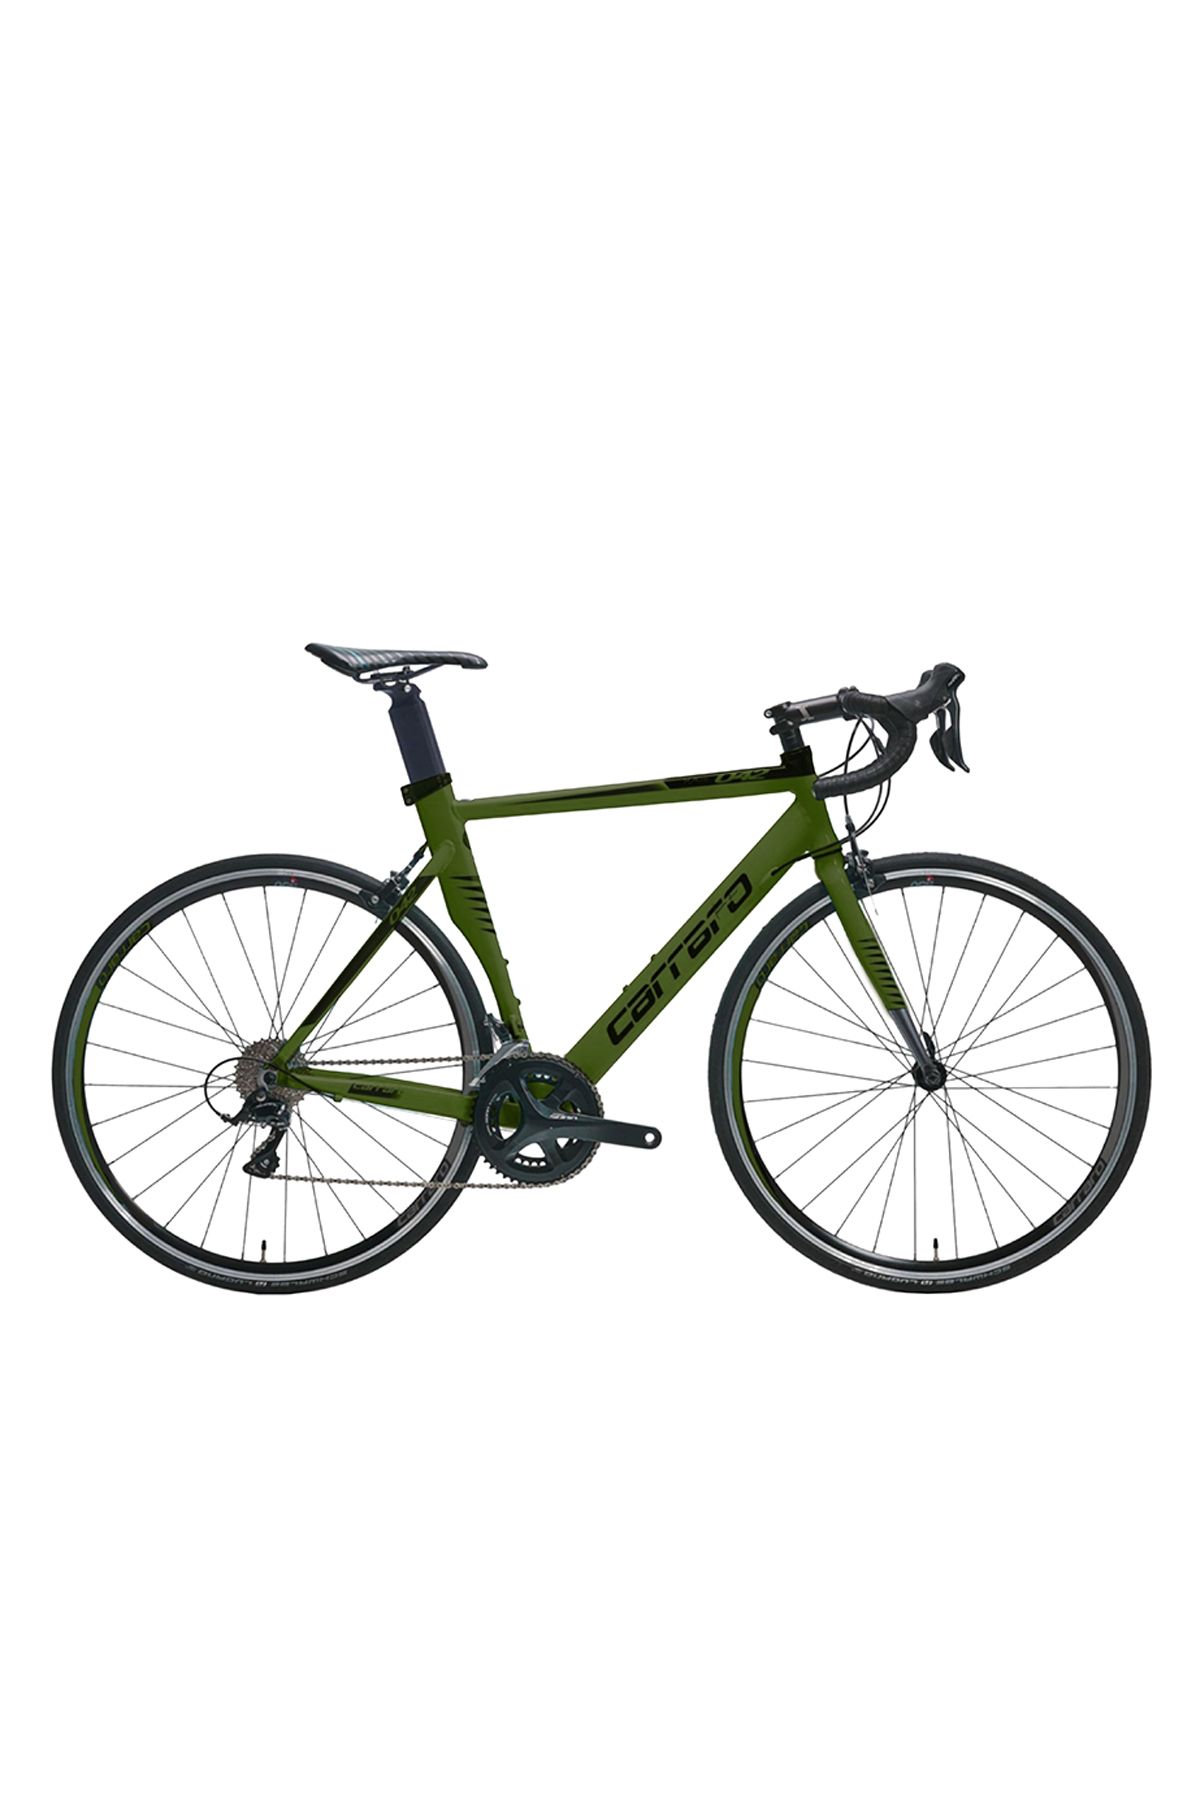 Carraro Race 042 28 jant Yol & Yarış Bisikleti 50 Kadro Mat Haki Yeşil Siyah